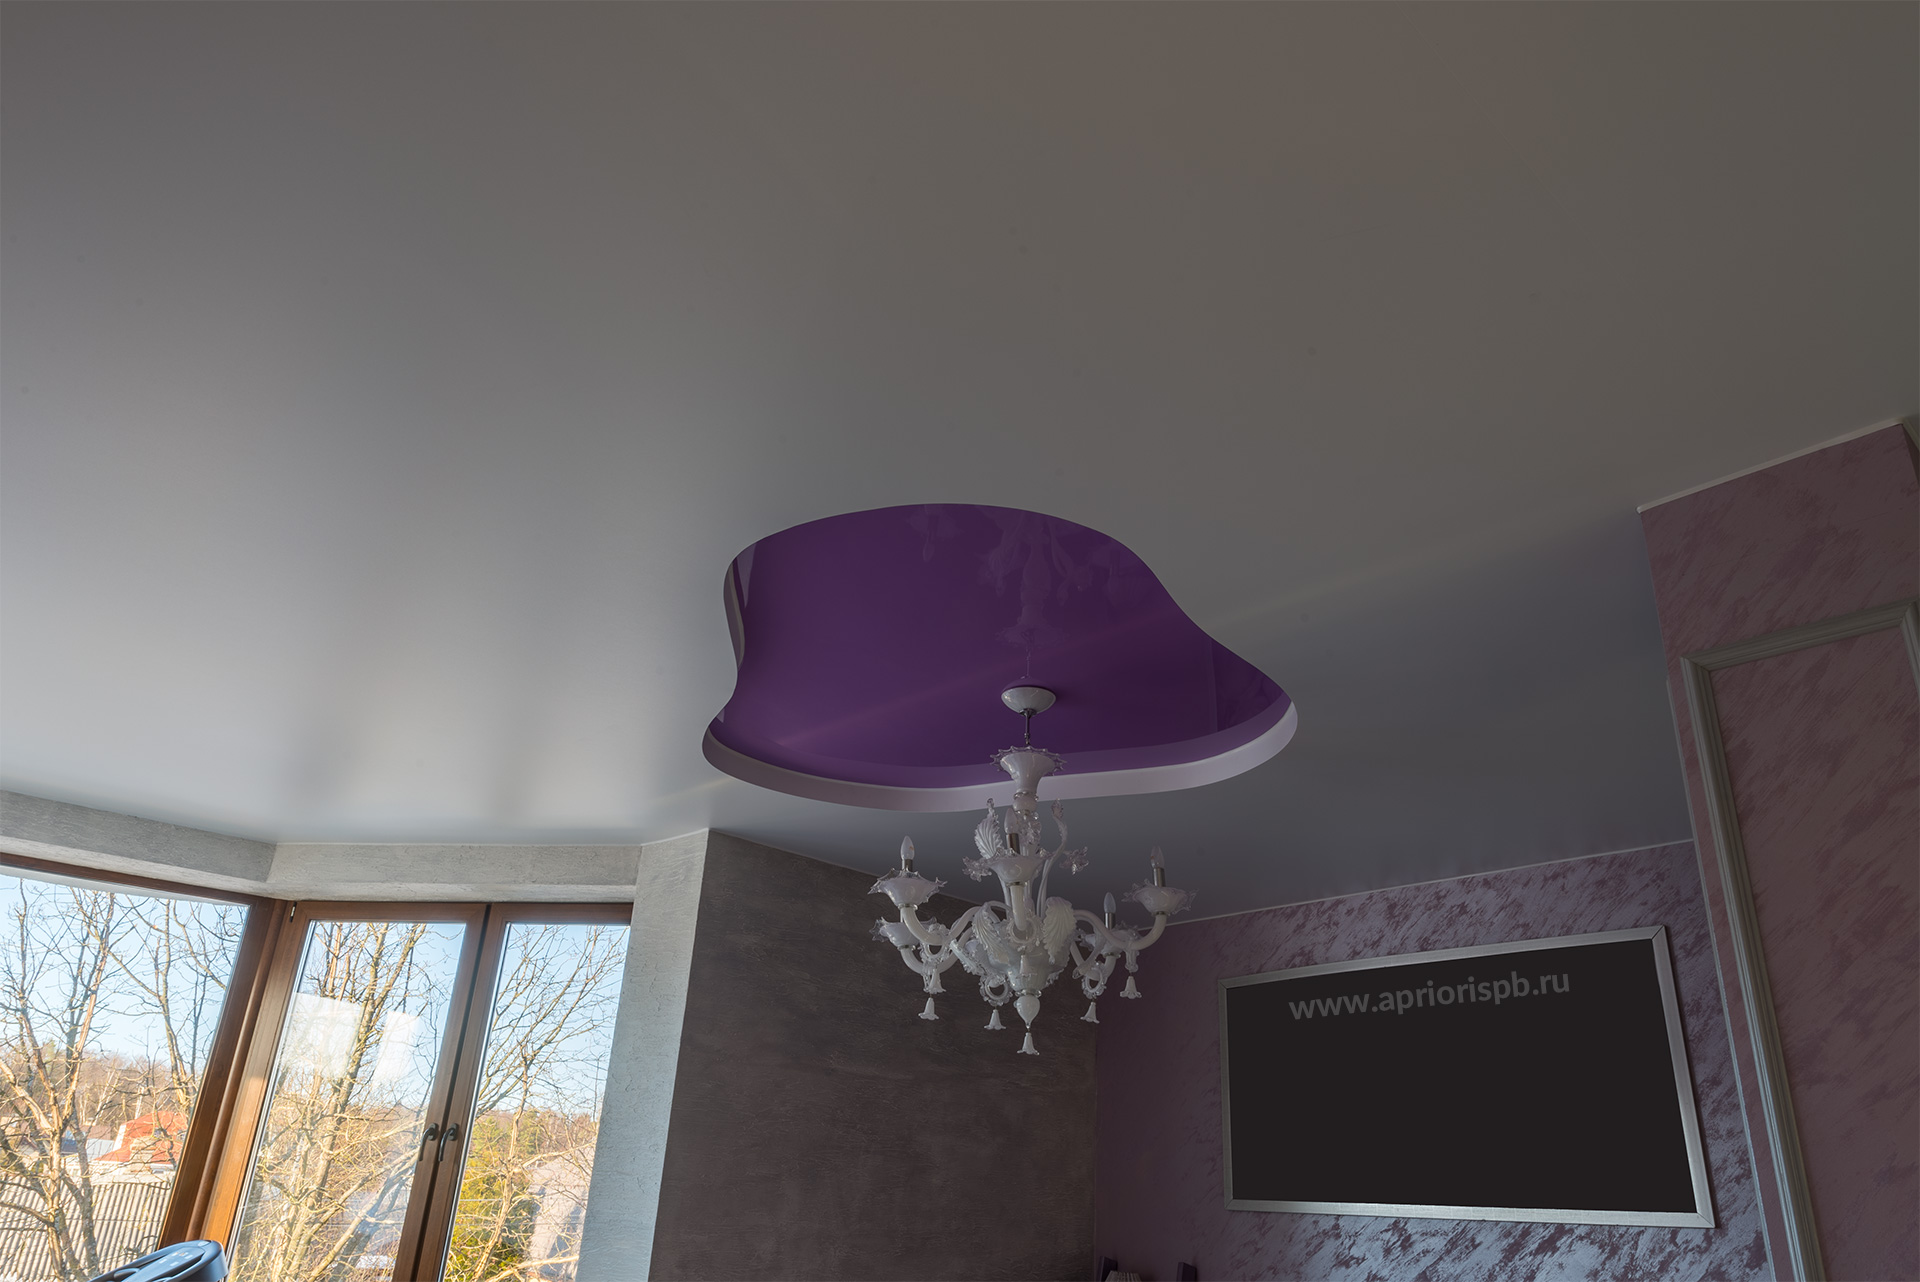 Двухуровневый ПВХ потолок с подсветкой, потолок в спальне, натяжной потолок, фиолетовй, розовый, двухуровневый, натяжные потолки в спб, санкт-петербург, априори